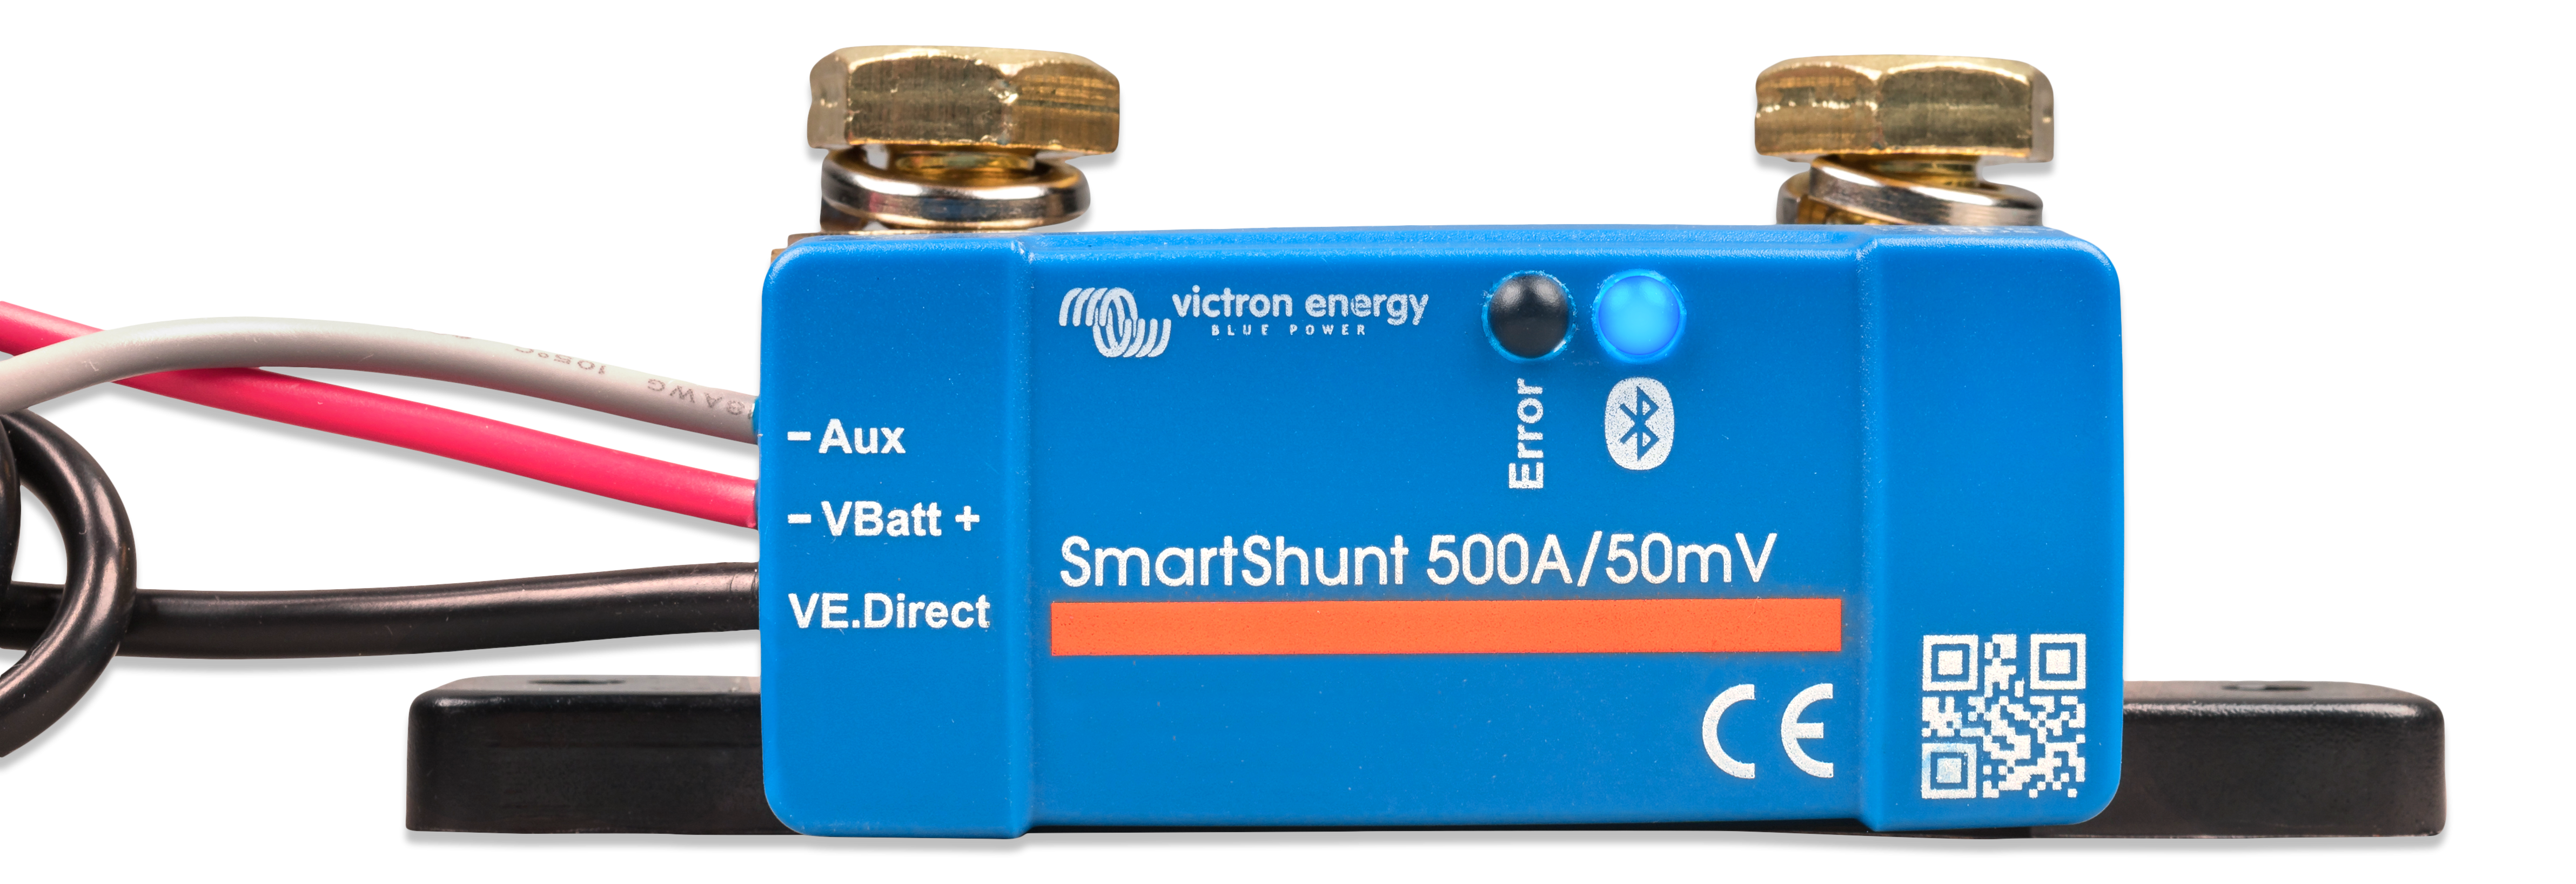 Smartshunt 500A/50mV IP65